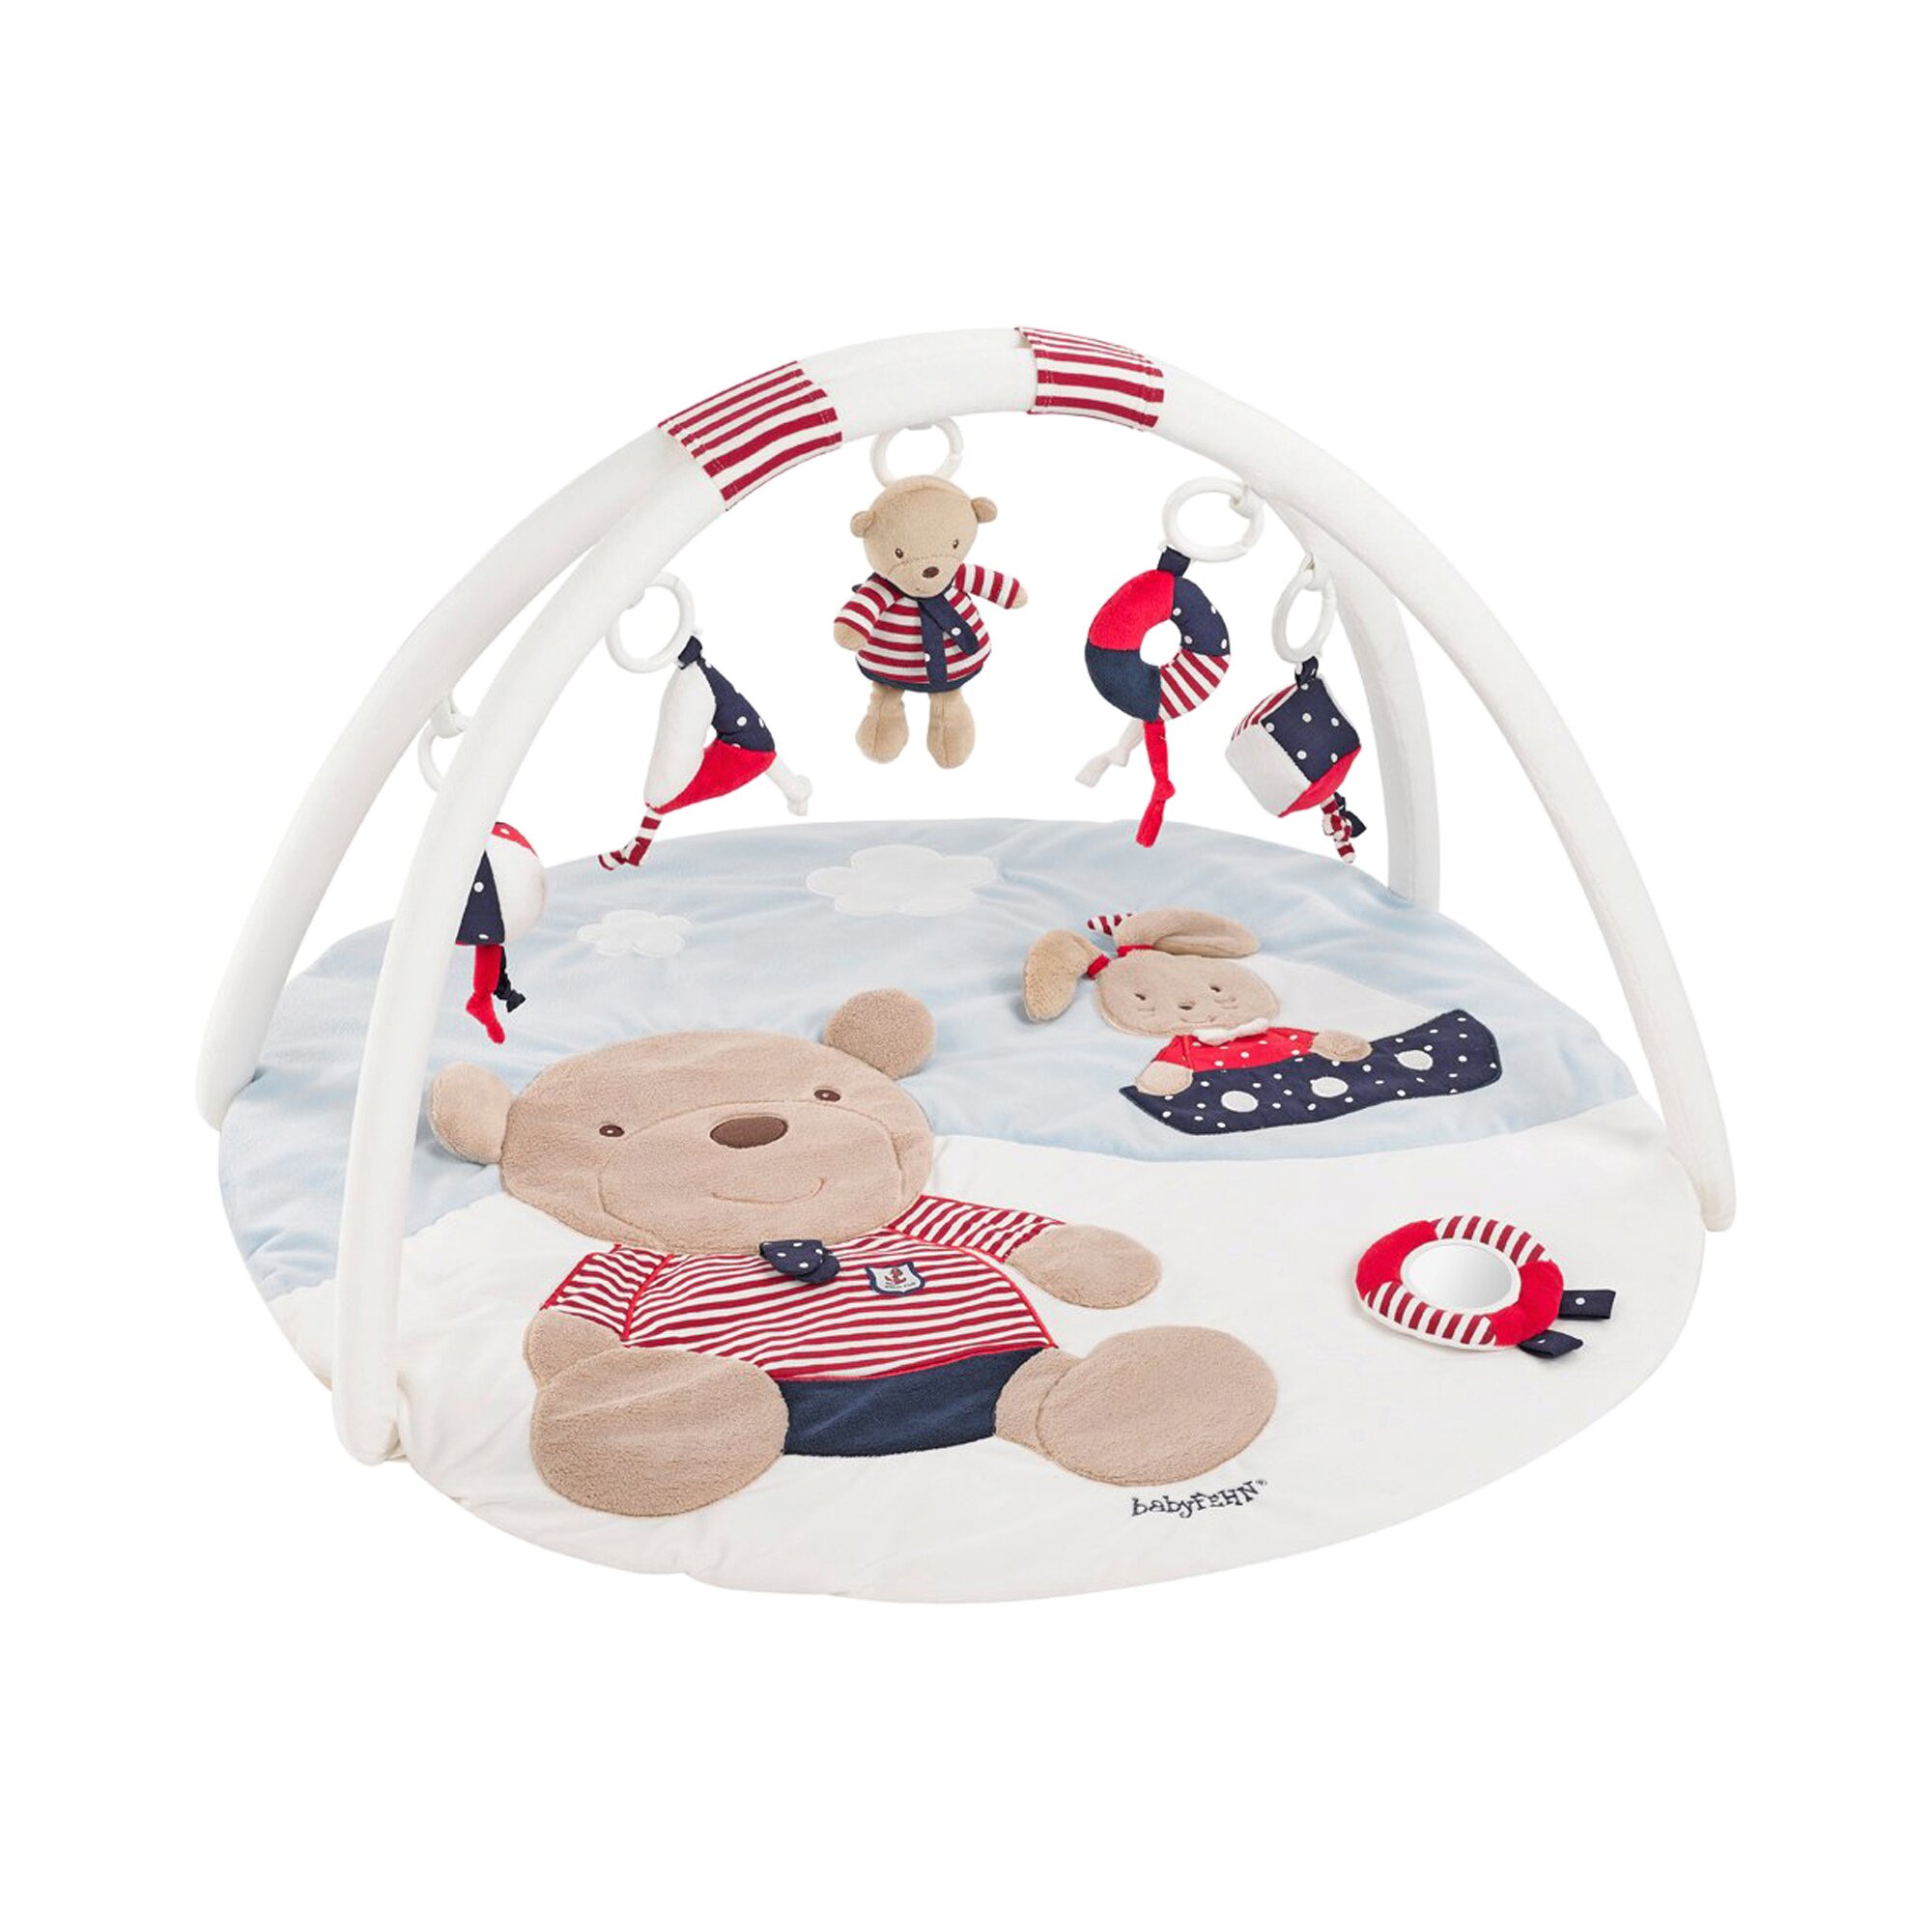 Fehn 078220 3-D-Activity-Decke Teddy / Spielbogen mit 5 abnehmbaren Spielzeugen für Babys Spiel & Spaß von Geburt an / Maße: Ø85cm